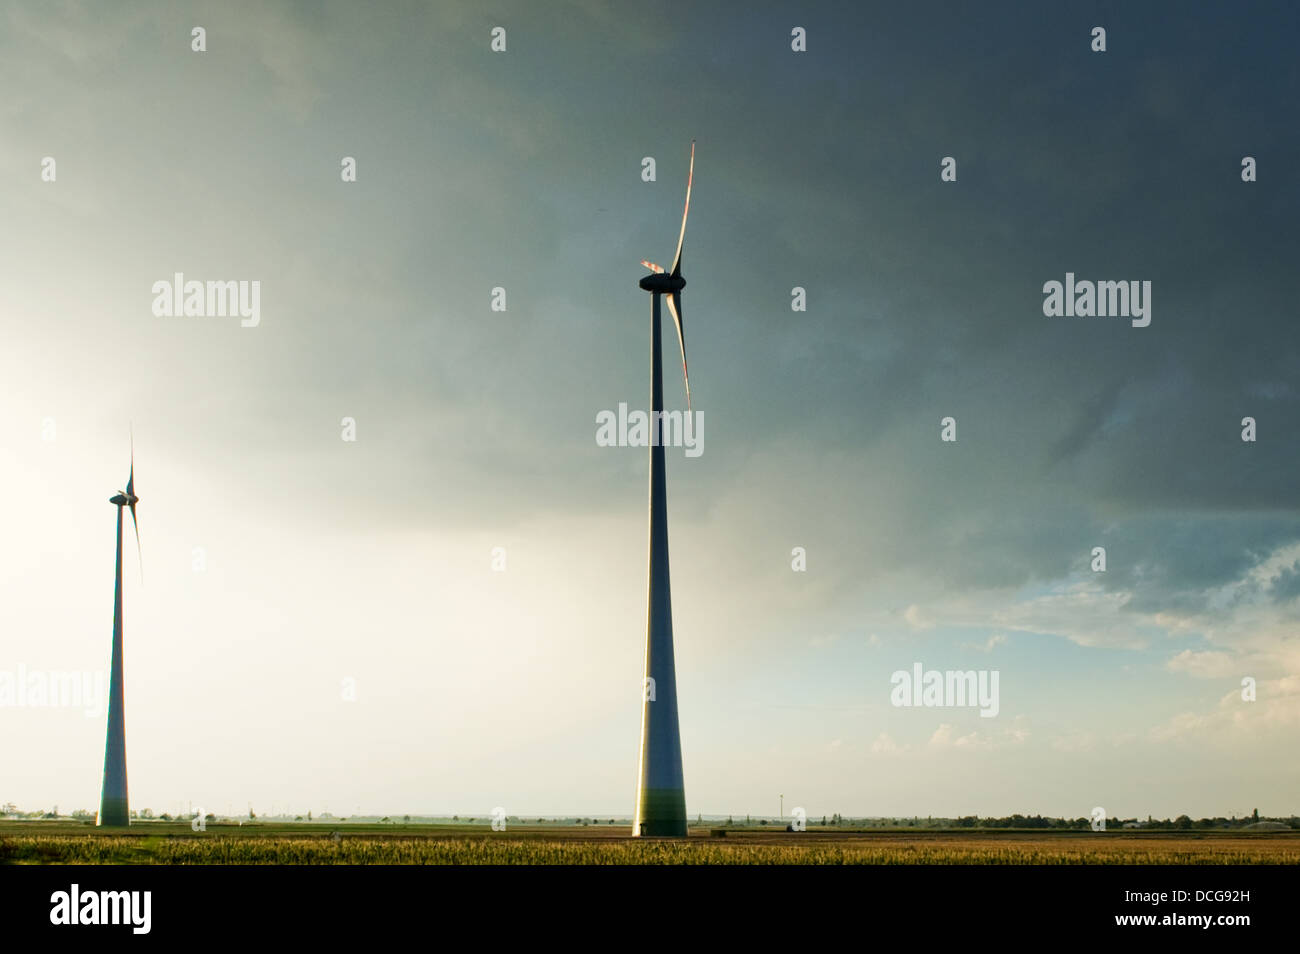 Lage von Windenergieanlagen in einem offenen Feld Stockfoto